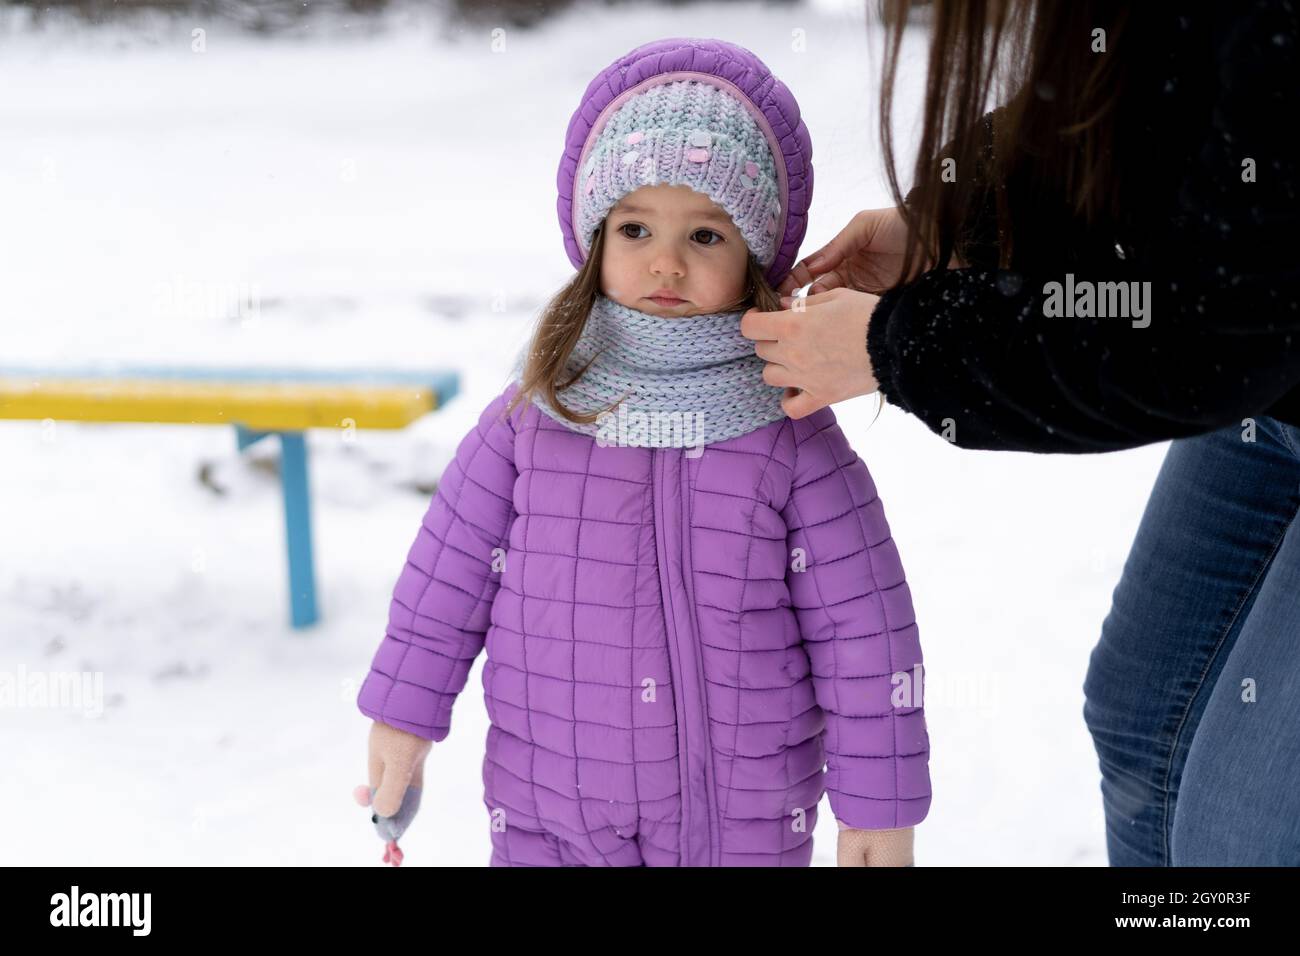 en hiver, une petite fille d'âge préscolaire se tient sur la neige.Maman redresse le foulard de bébé. Banque D'Images